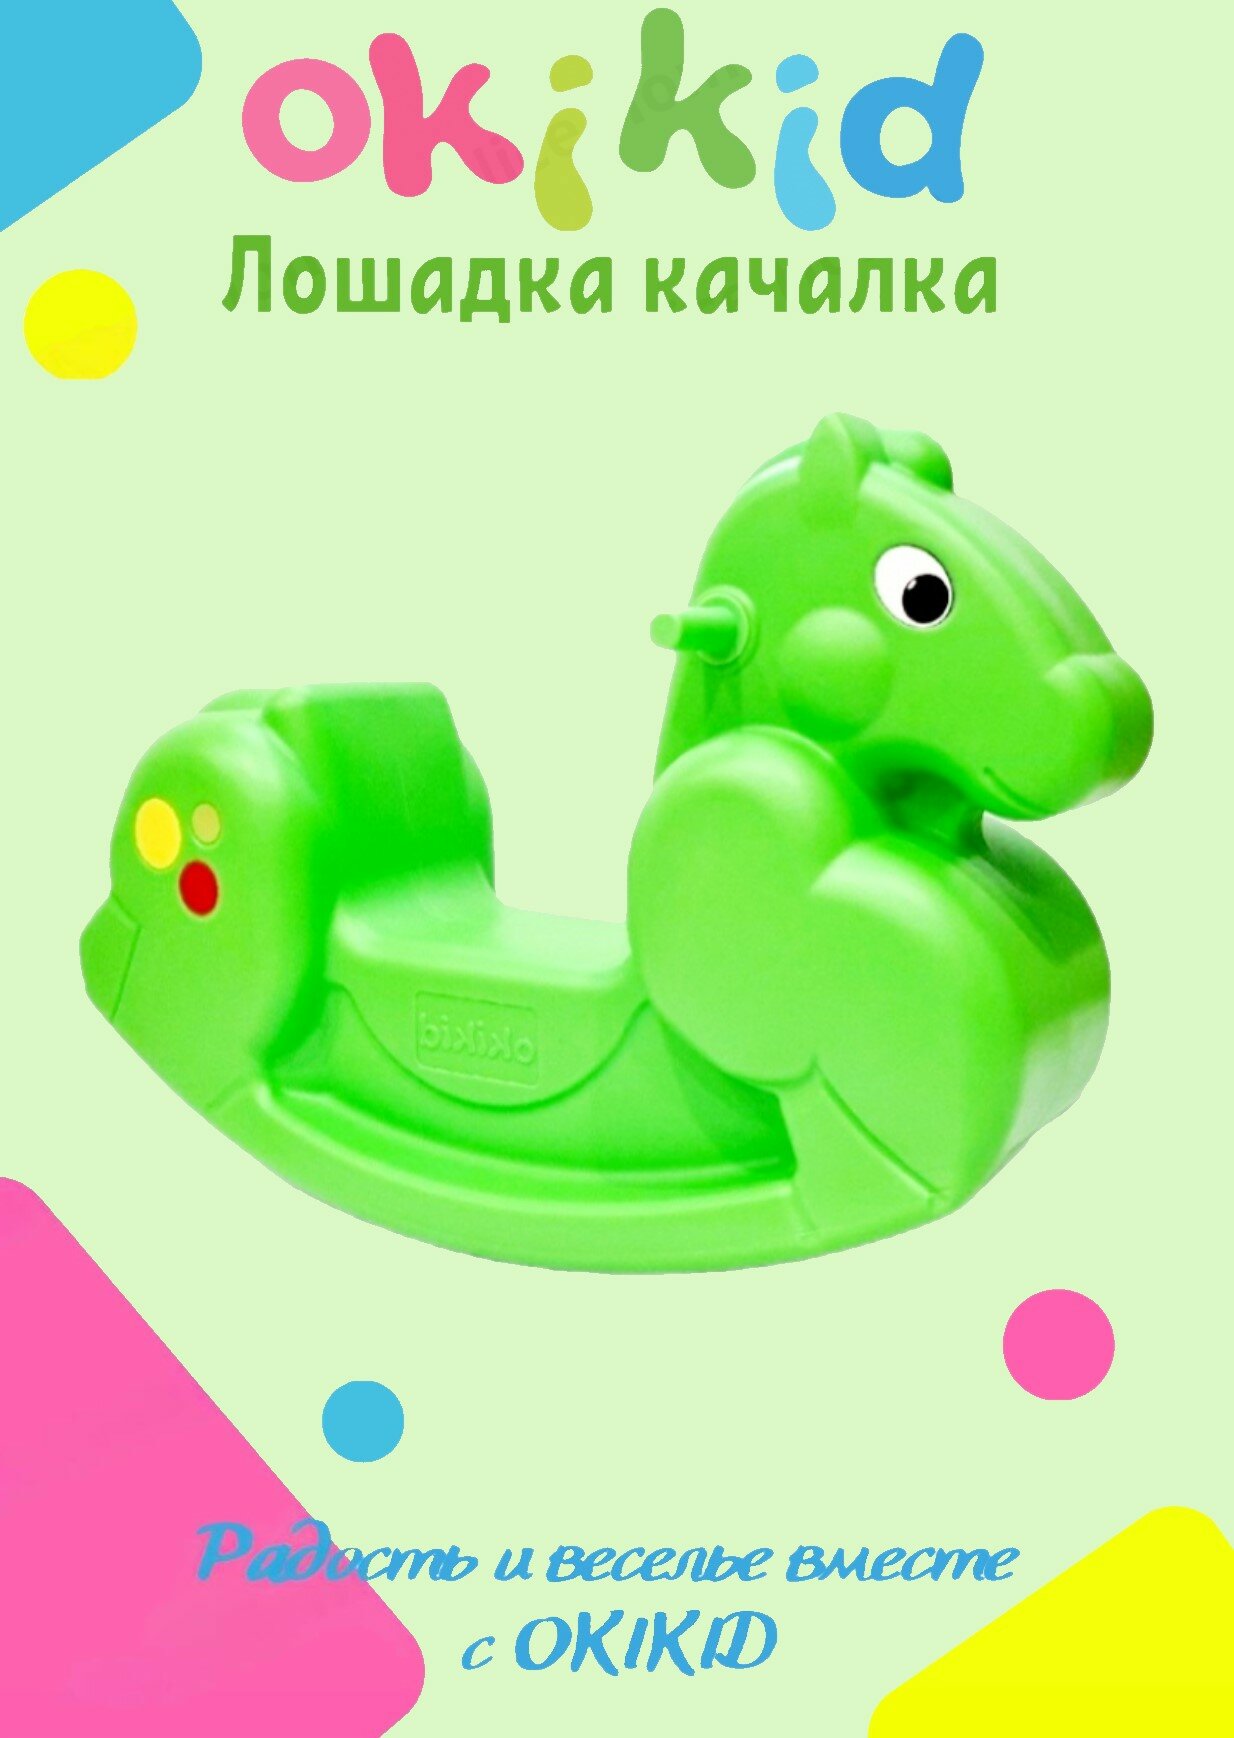 Качалка лошадка Okikid Т3-3-012 детская пластиковая, качели детские салатовая